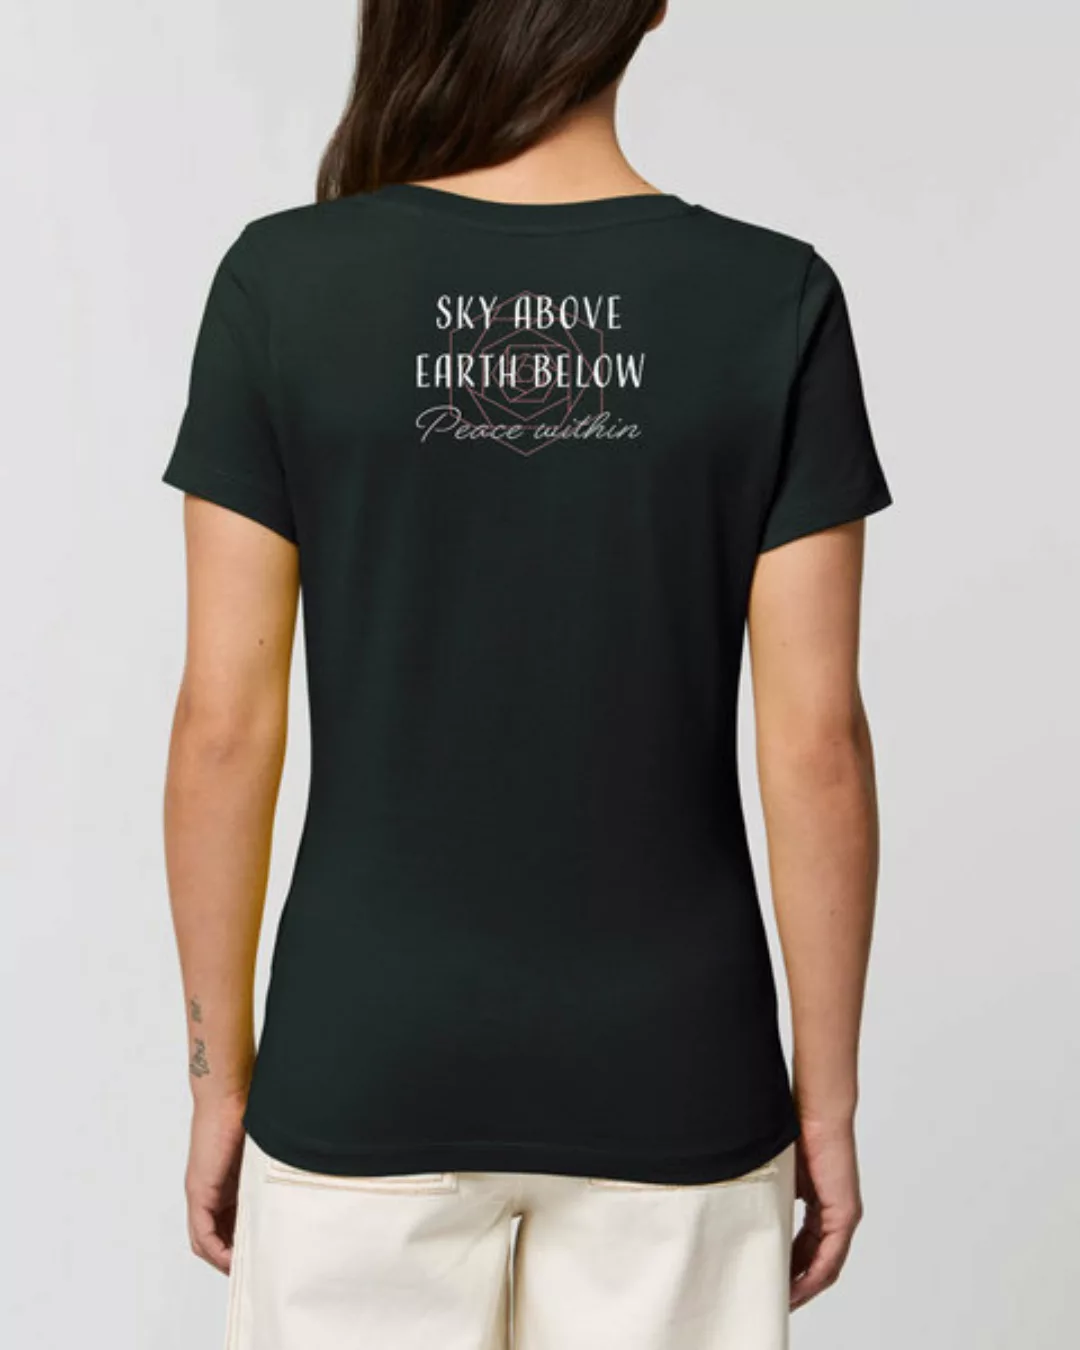 Bio Damen Rundhals Statement T-shirt "Peace Within" Von Human Family günstig online kaufen